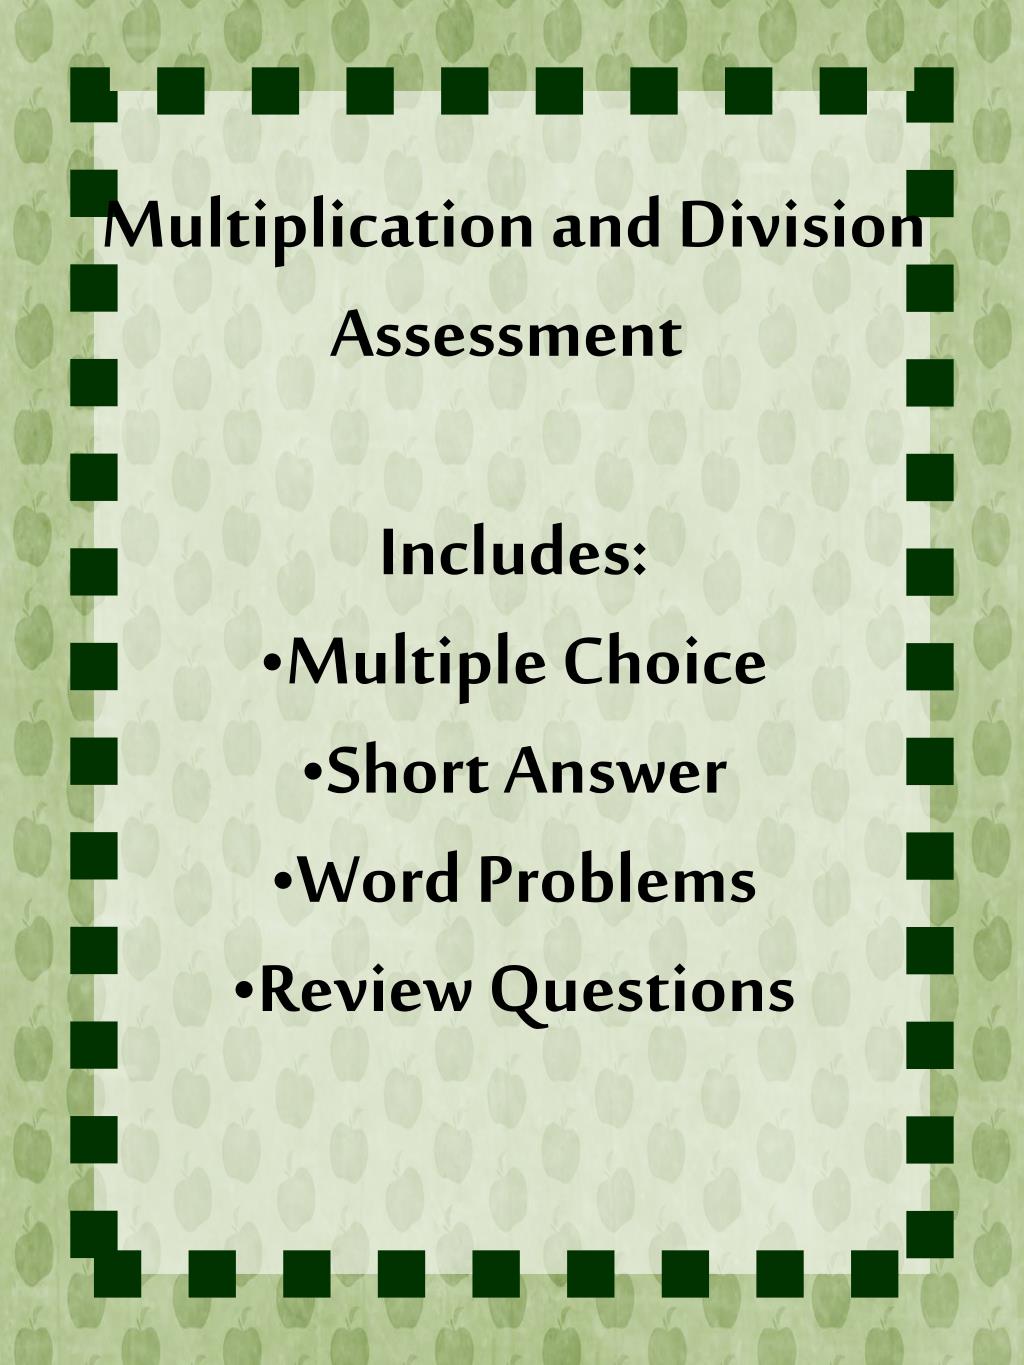 division-3-2-division-worksheets-grade-3-math-division-worksheets-3rd-grade-math-worksheets